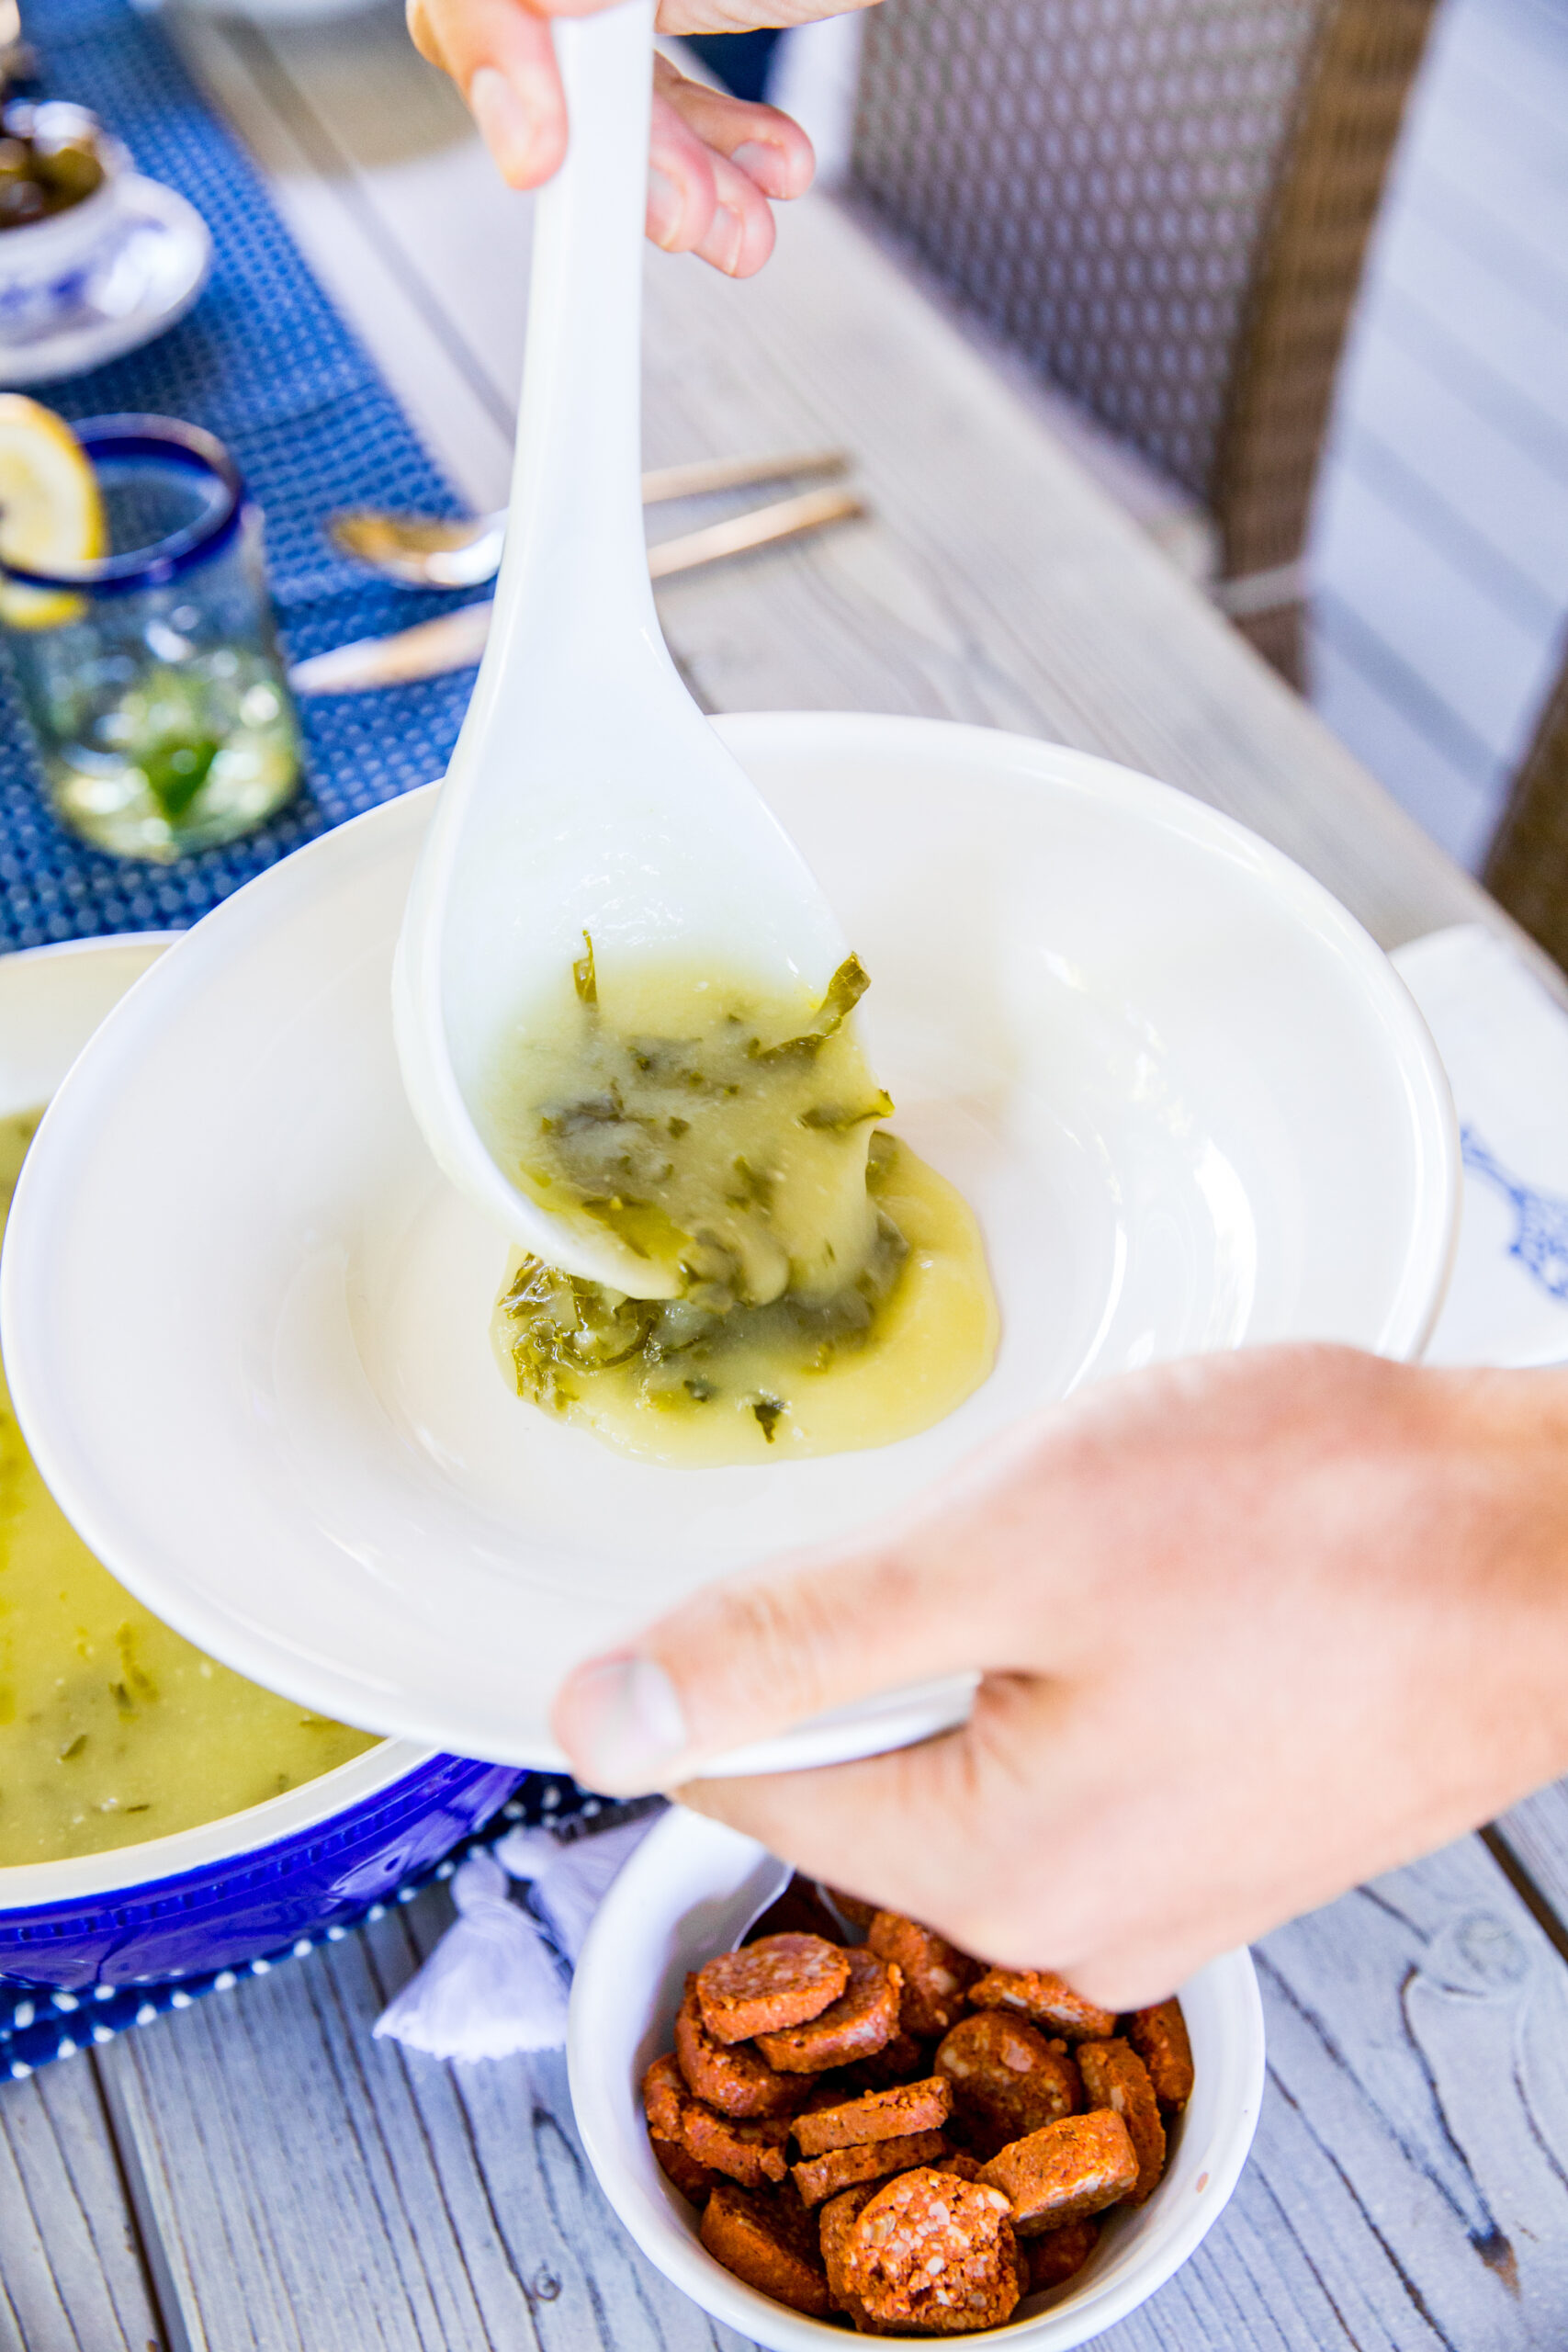 Caldo Verde - Portuguese Green Soup